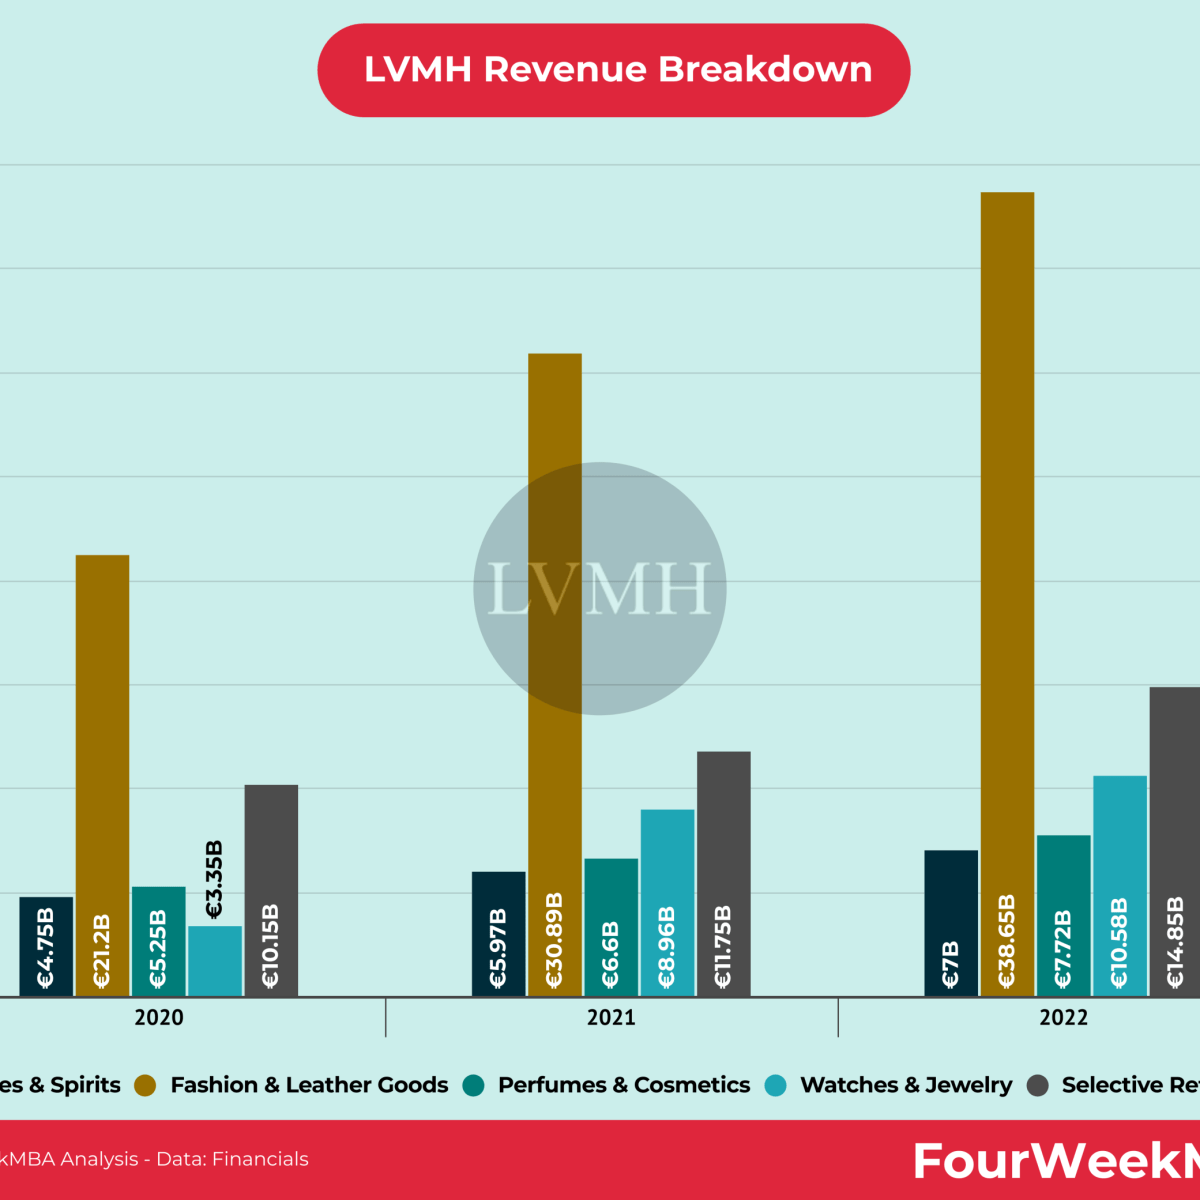 LVMH Revenue Breakdown - FourWeekMBA